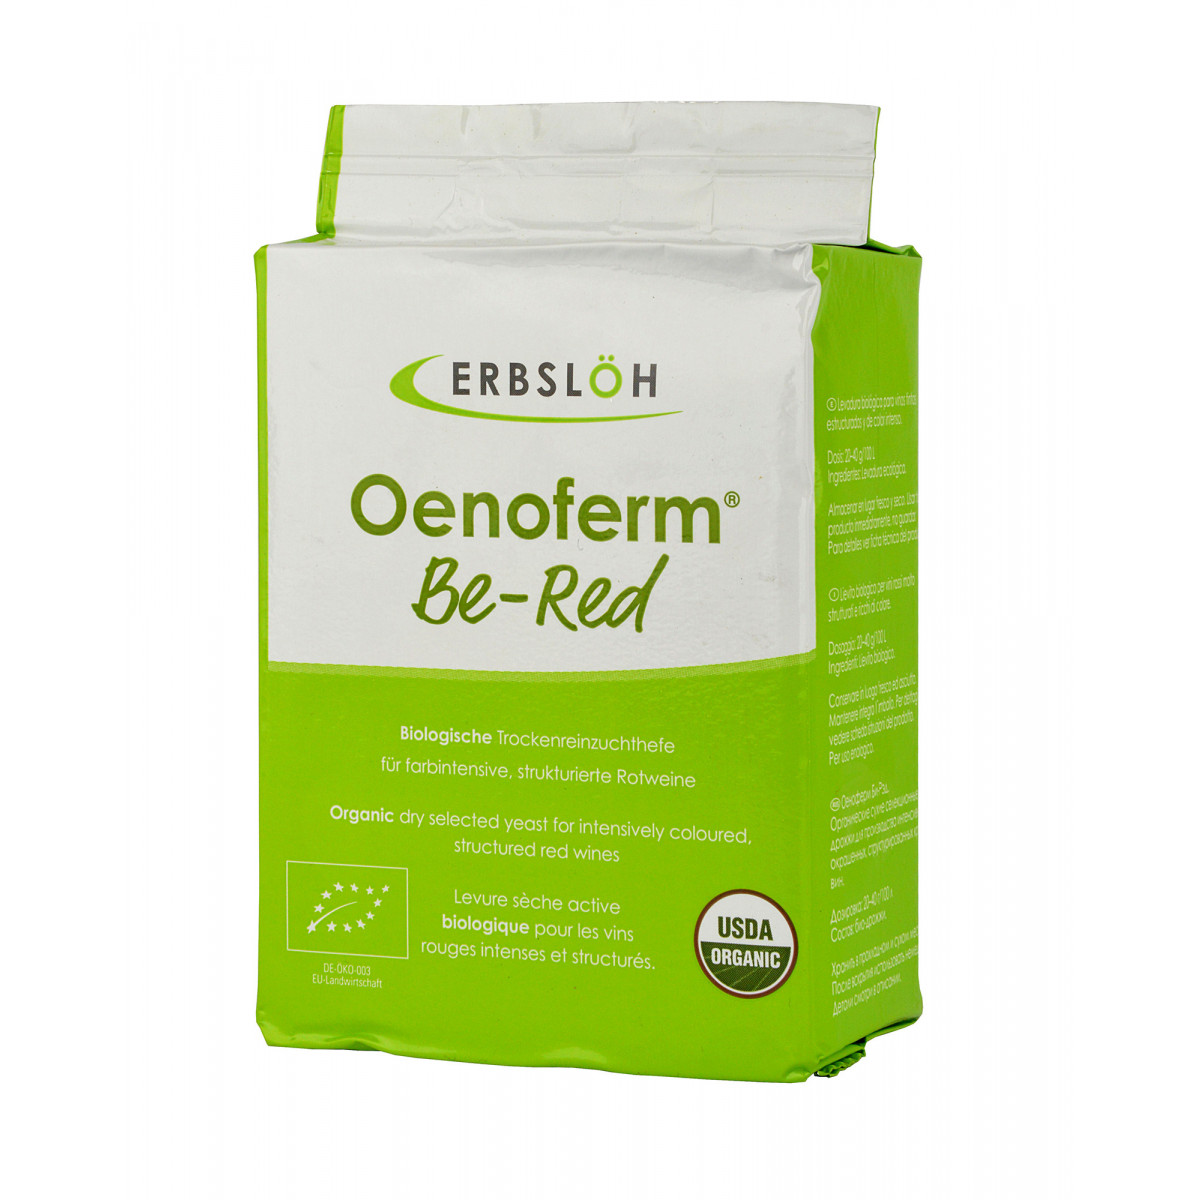 Dried yeast Oenoferm Be-Red BIO 500 g